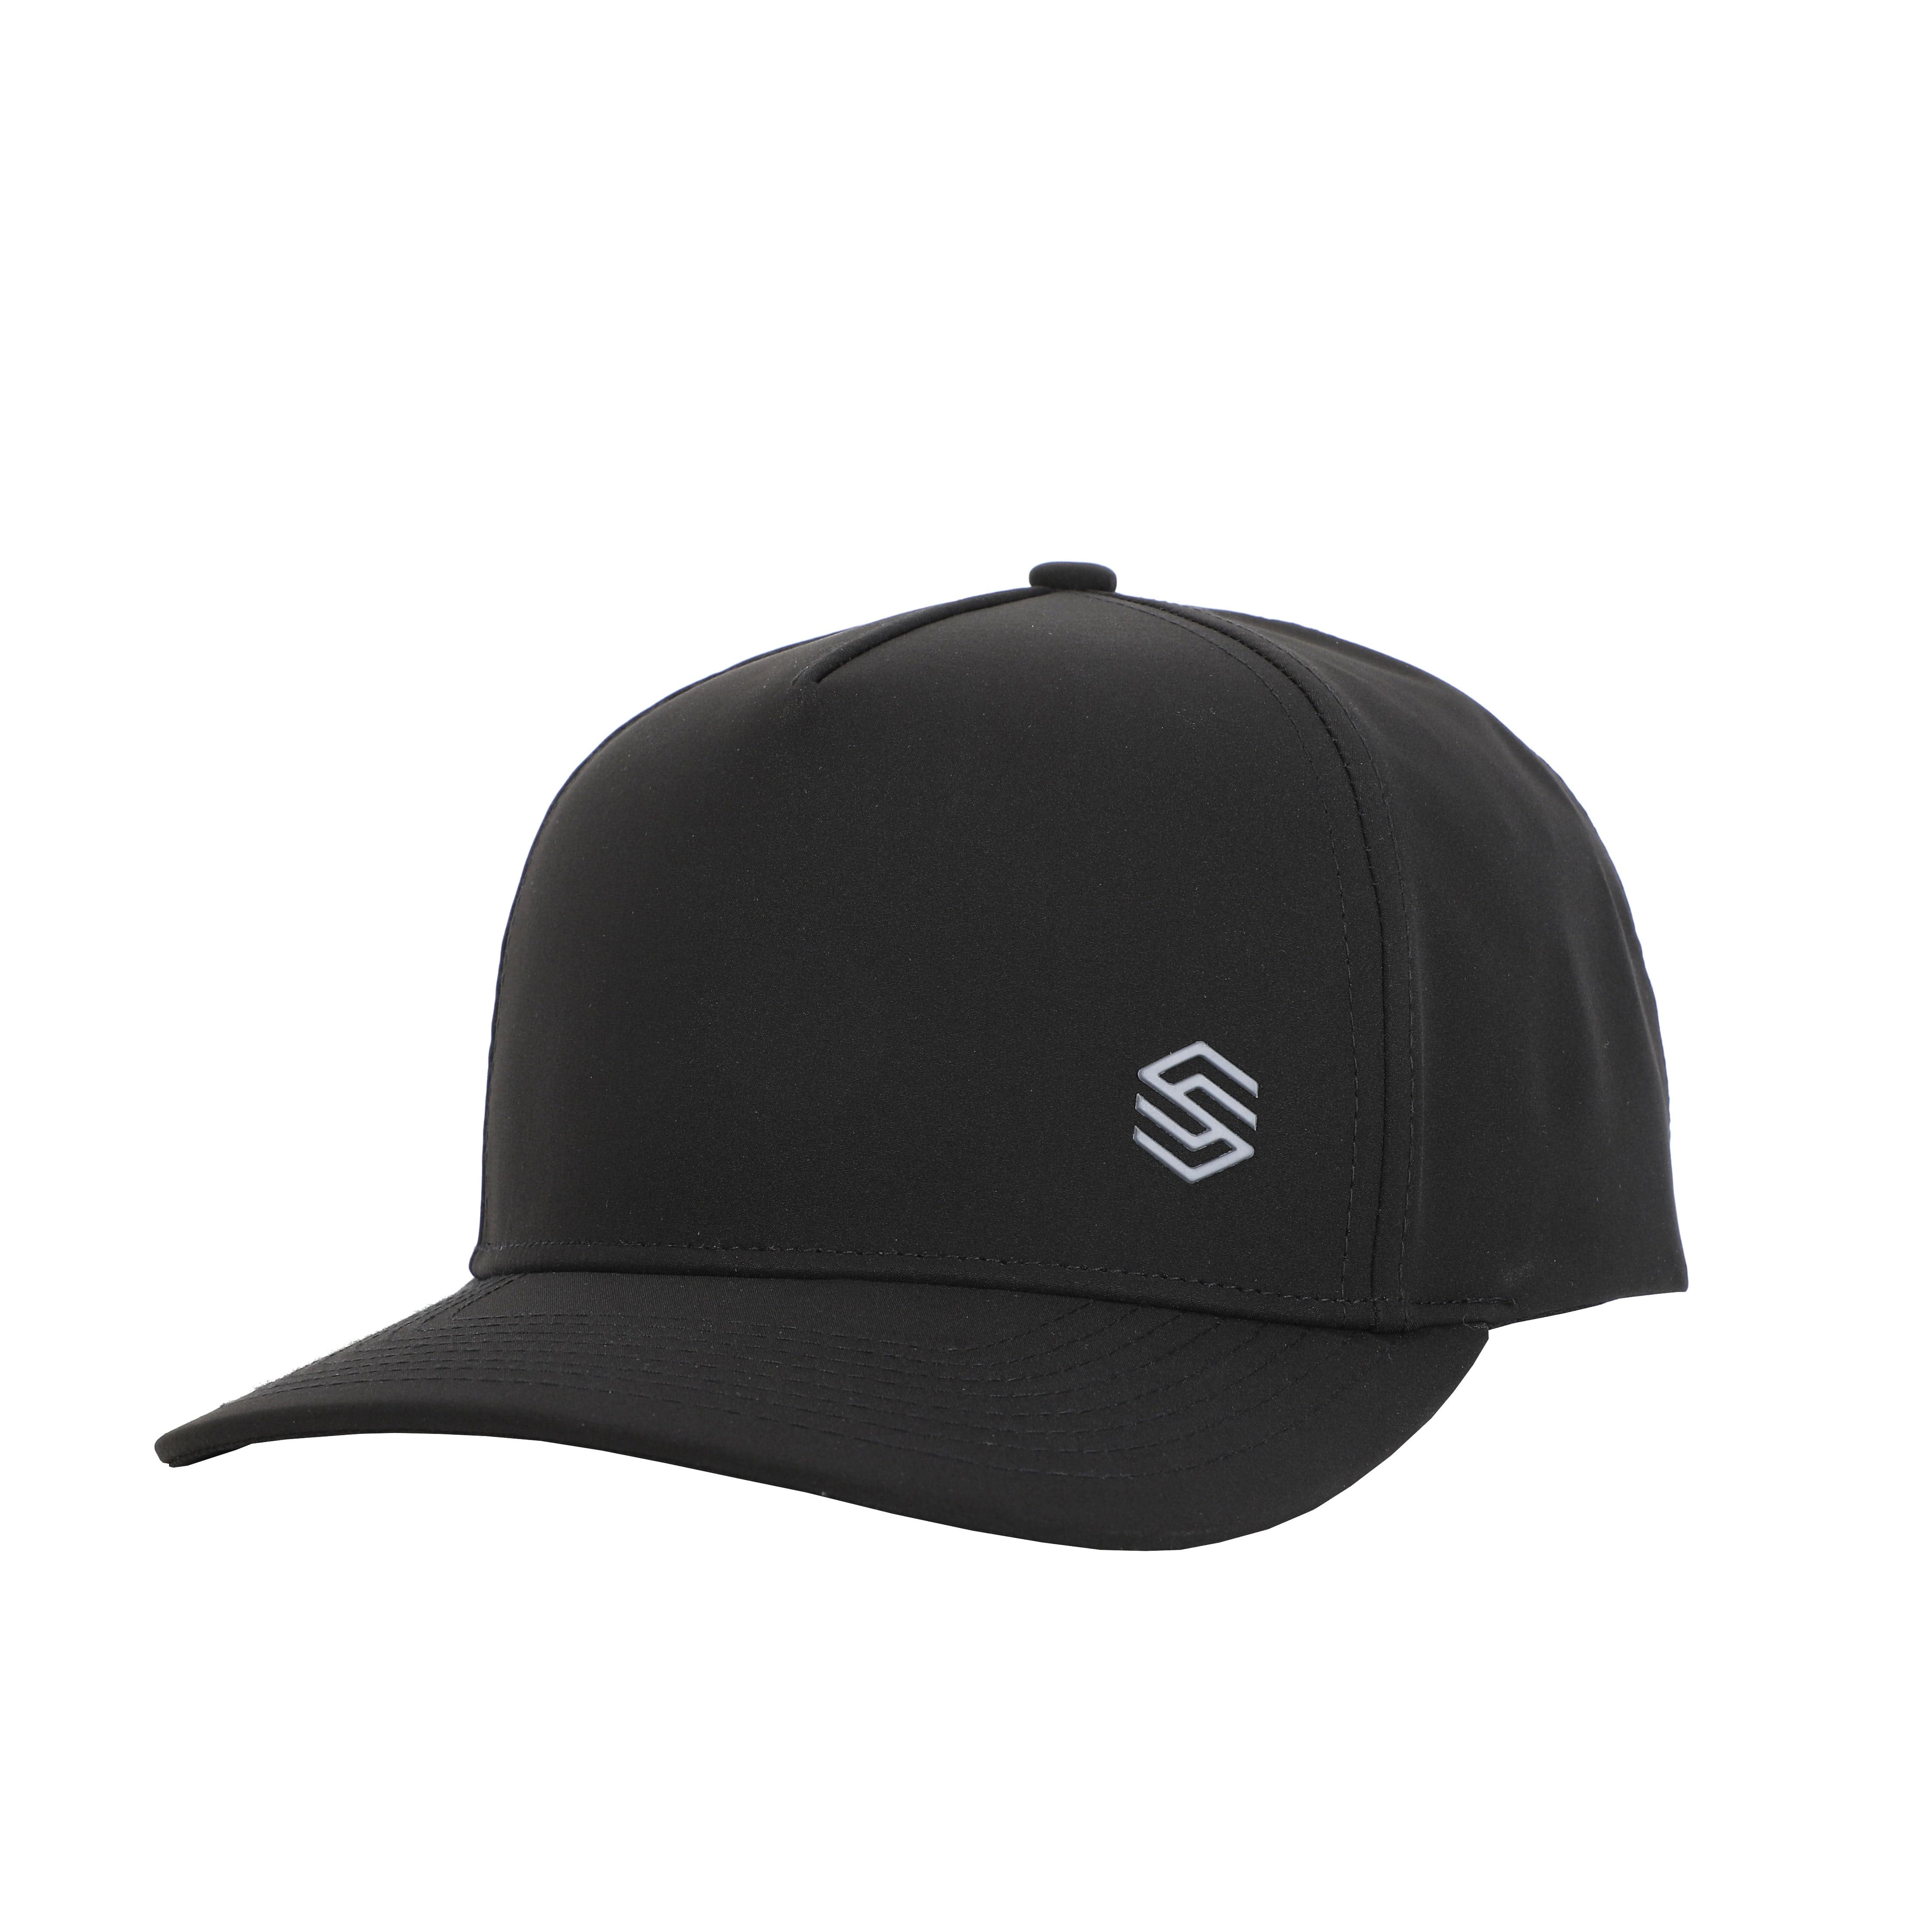 Stix Golf Apparel New Hat